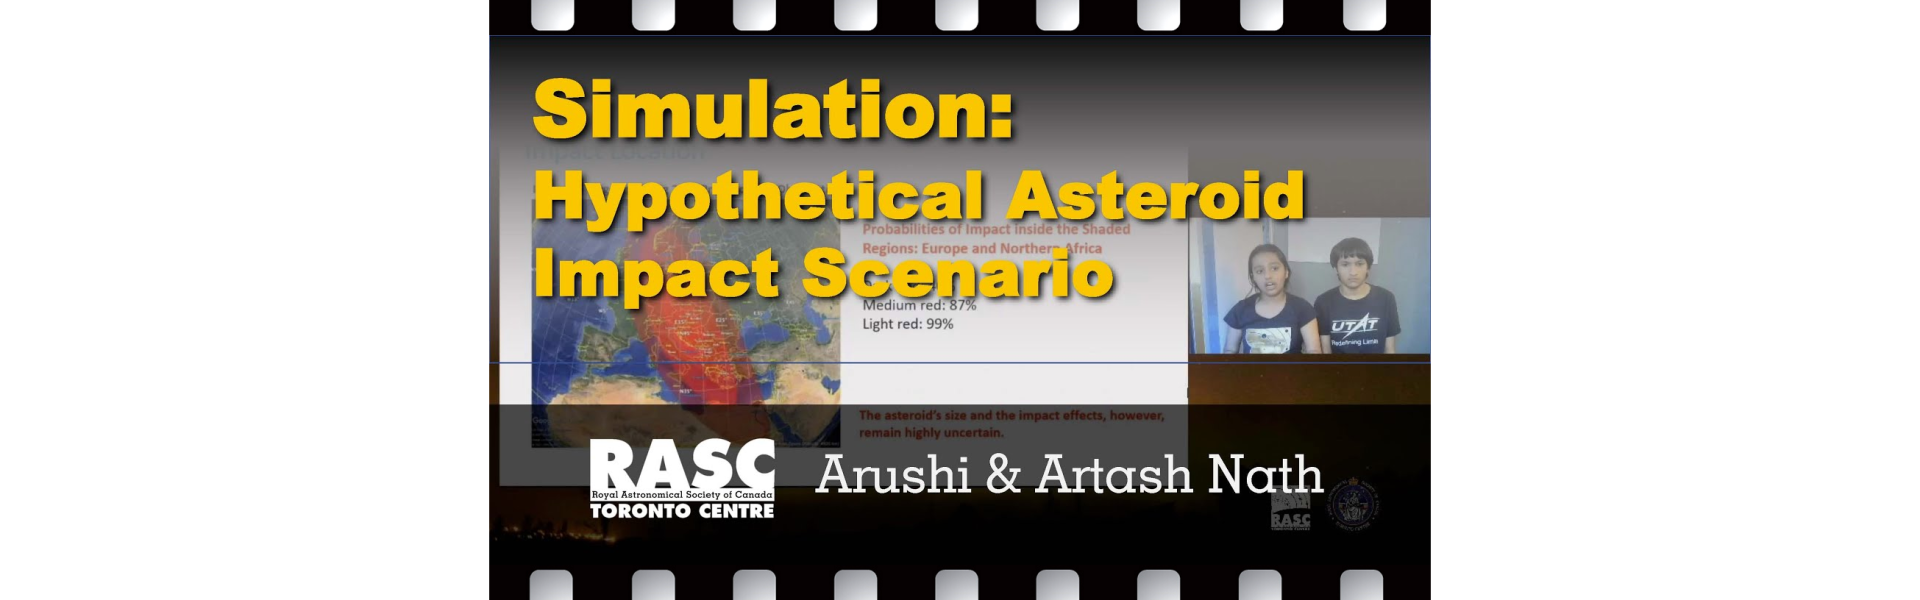 Simulation: Hypothetical Asteroid Impact Scenario